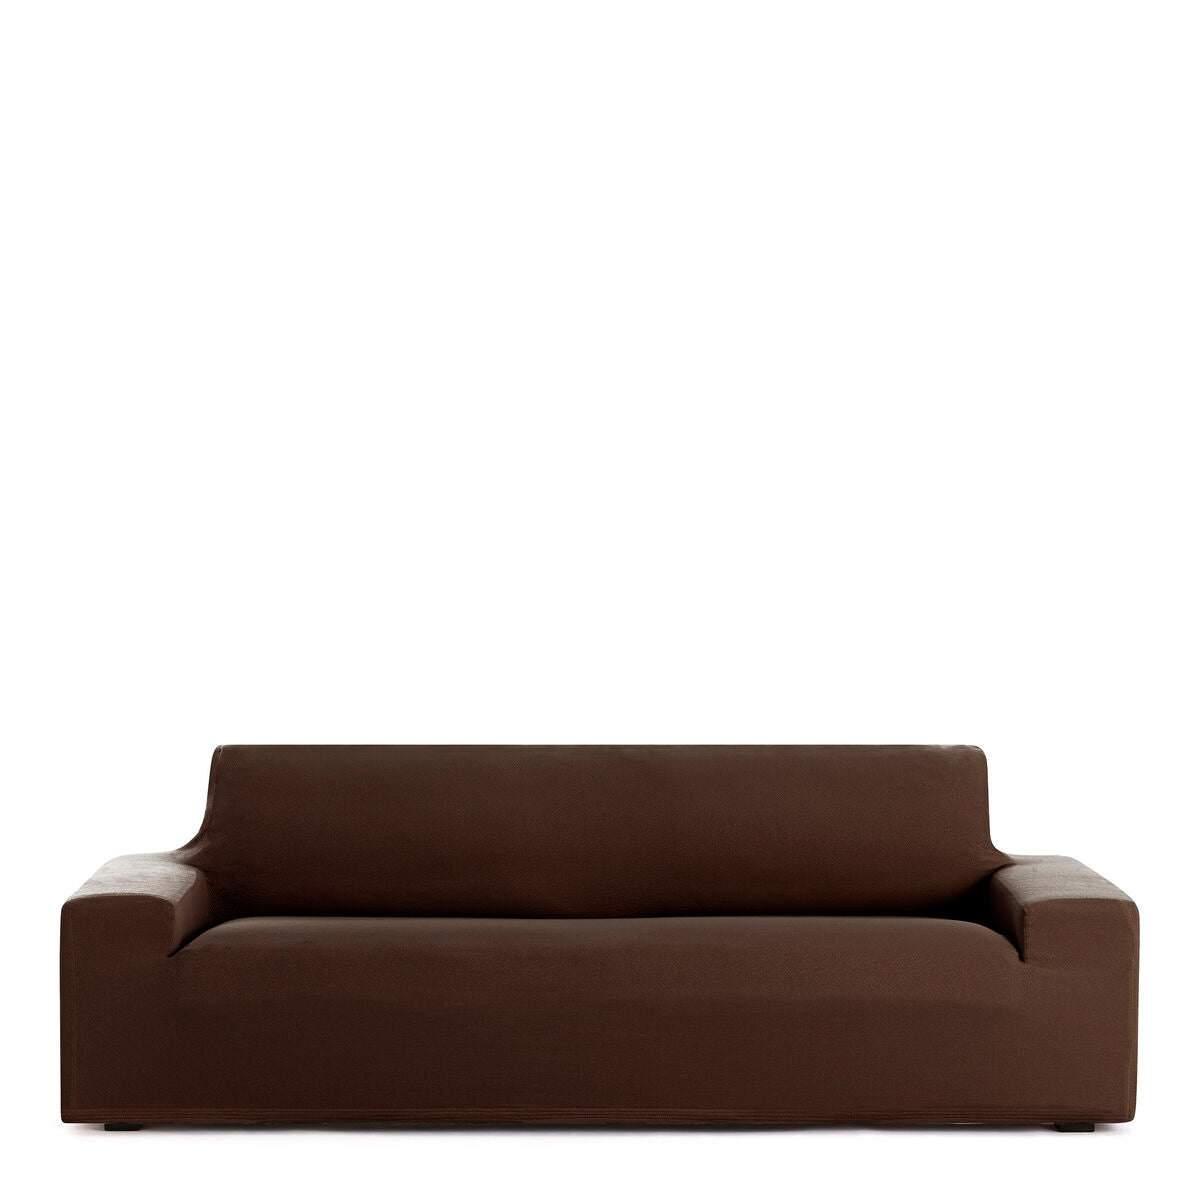 Sofabezug Eysa BRONX Braun 70 x 110 x 170 cm